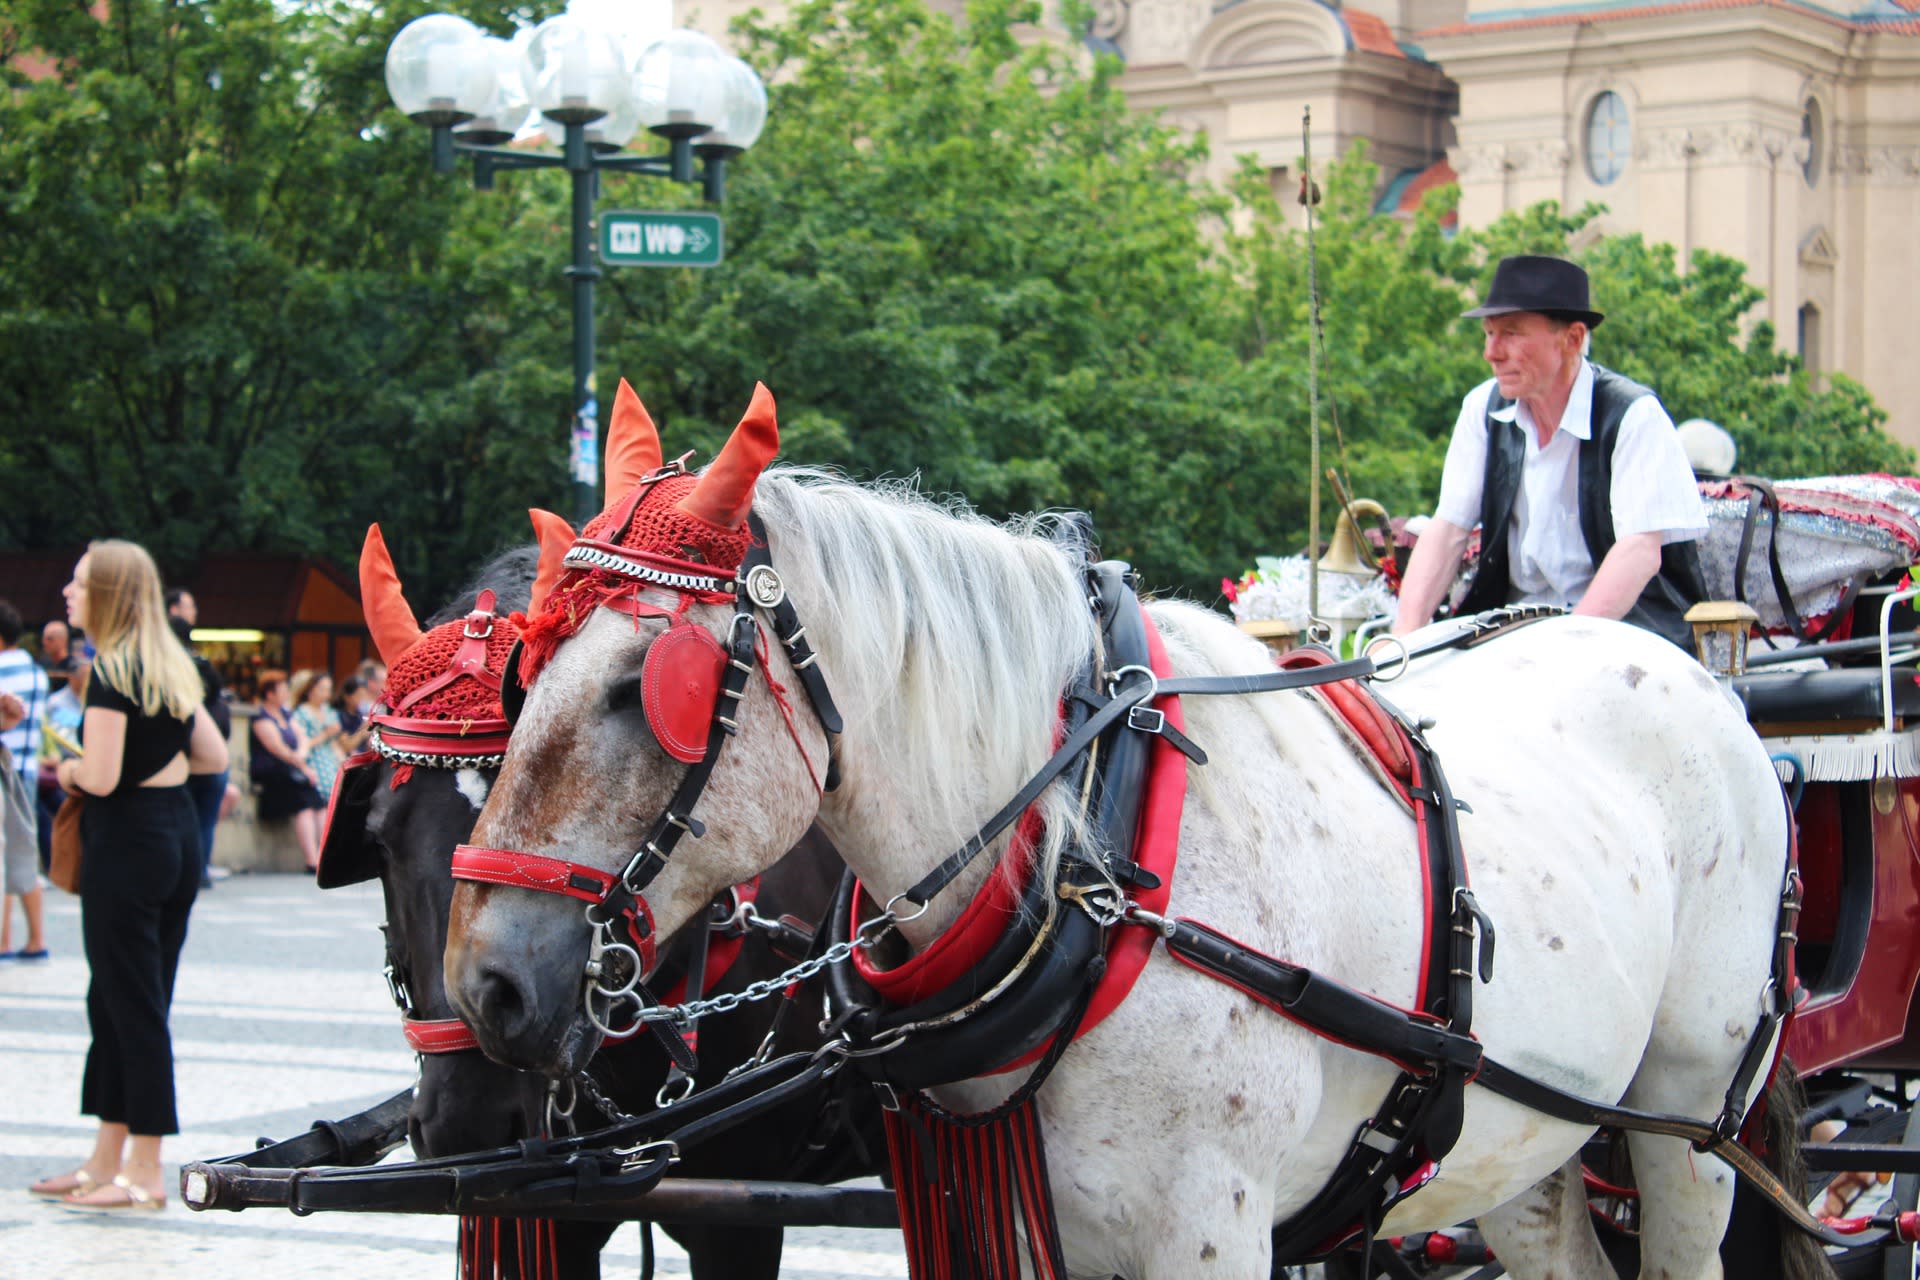 Koňské povozy v Praze budí emoce, mají své odpůrce i zastánce. Foto: Pixabay.com